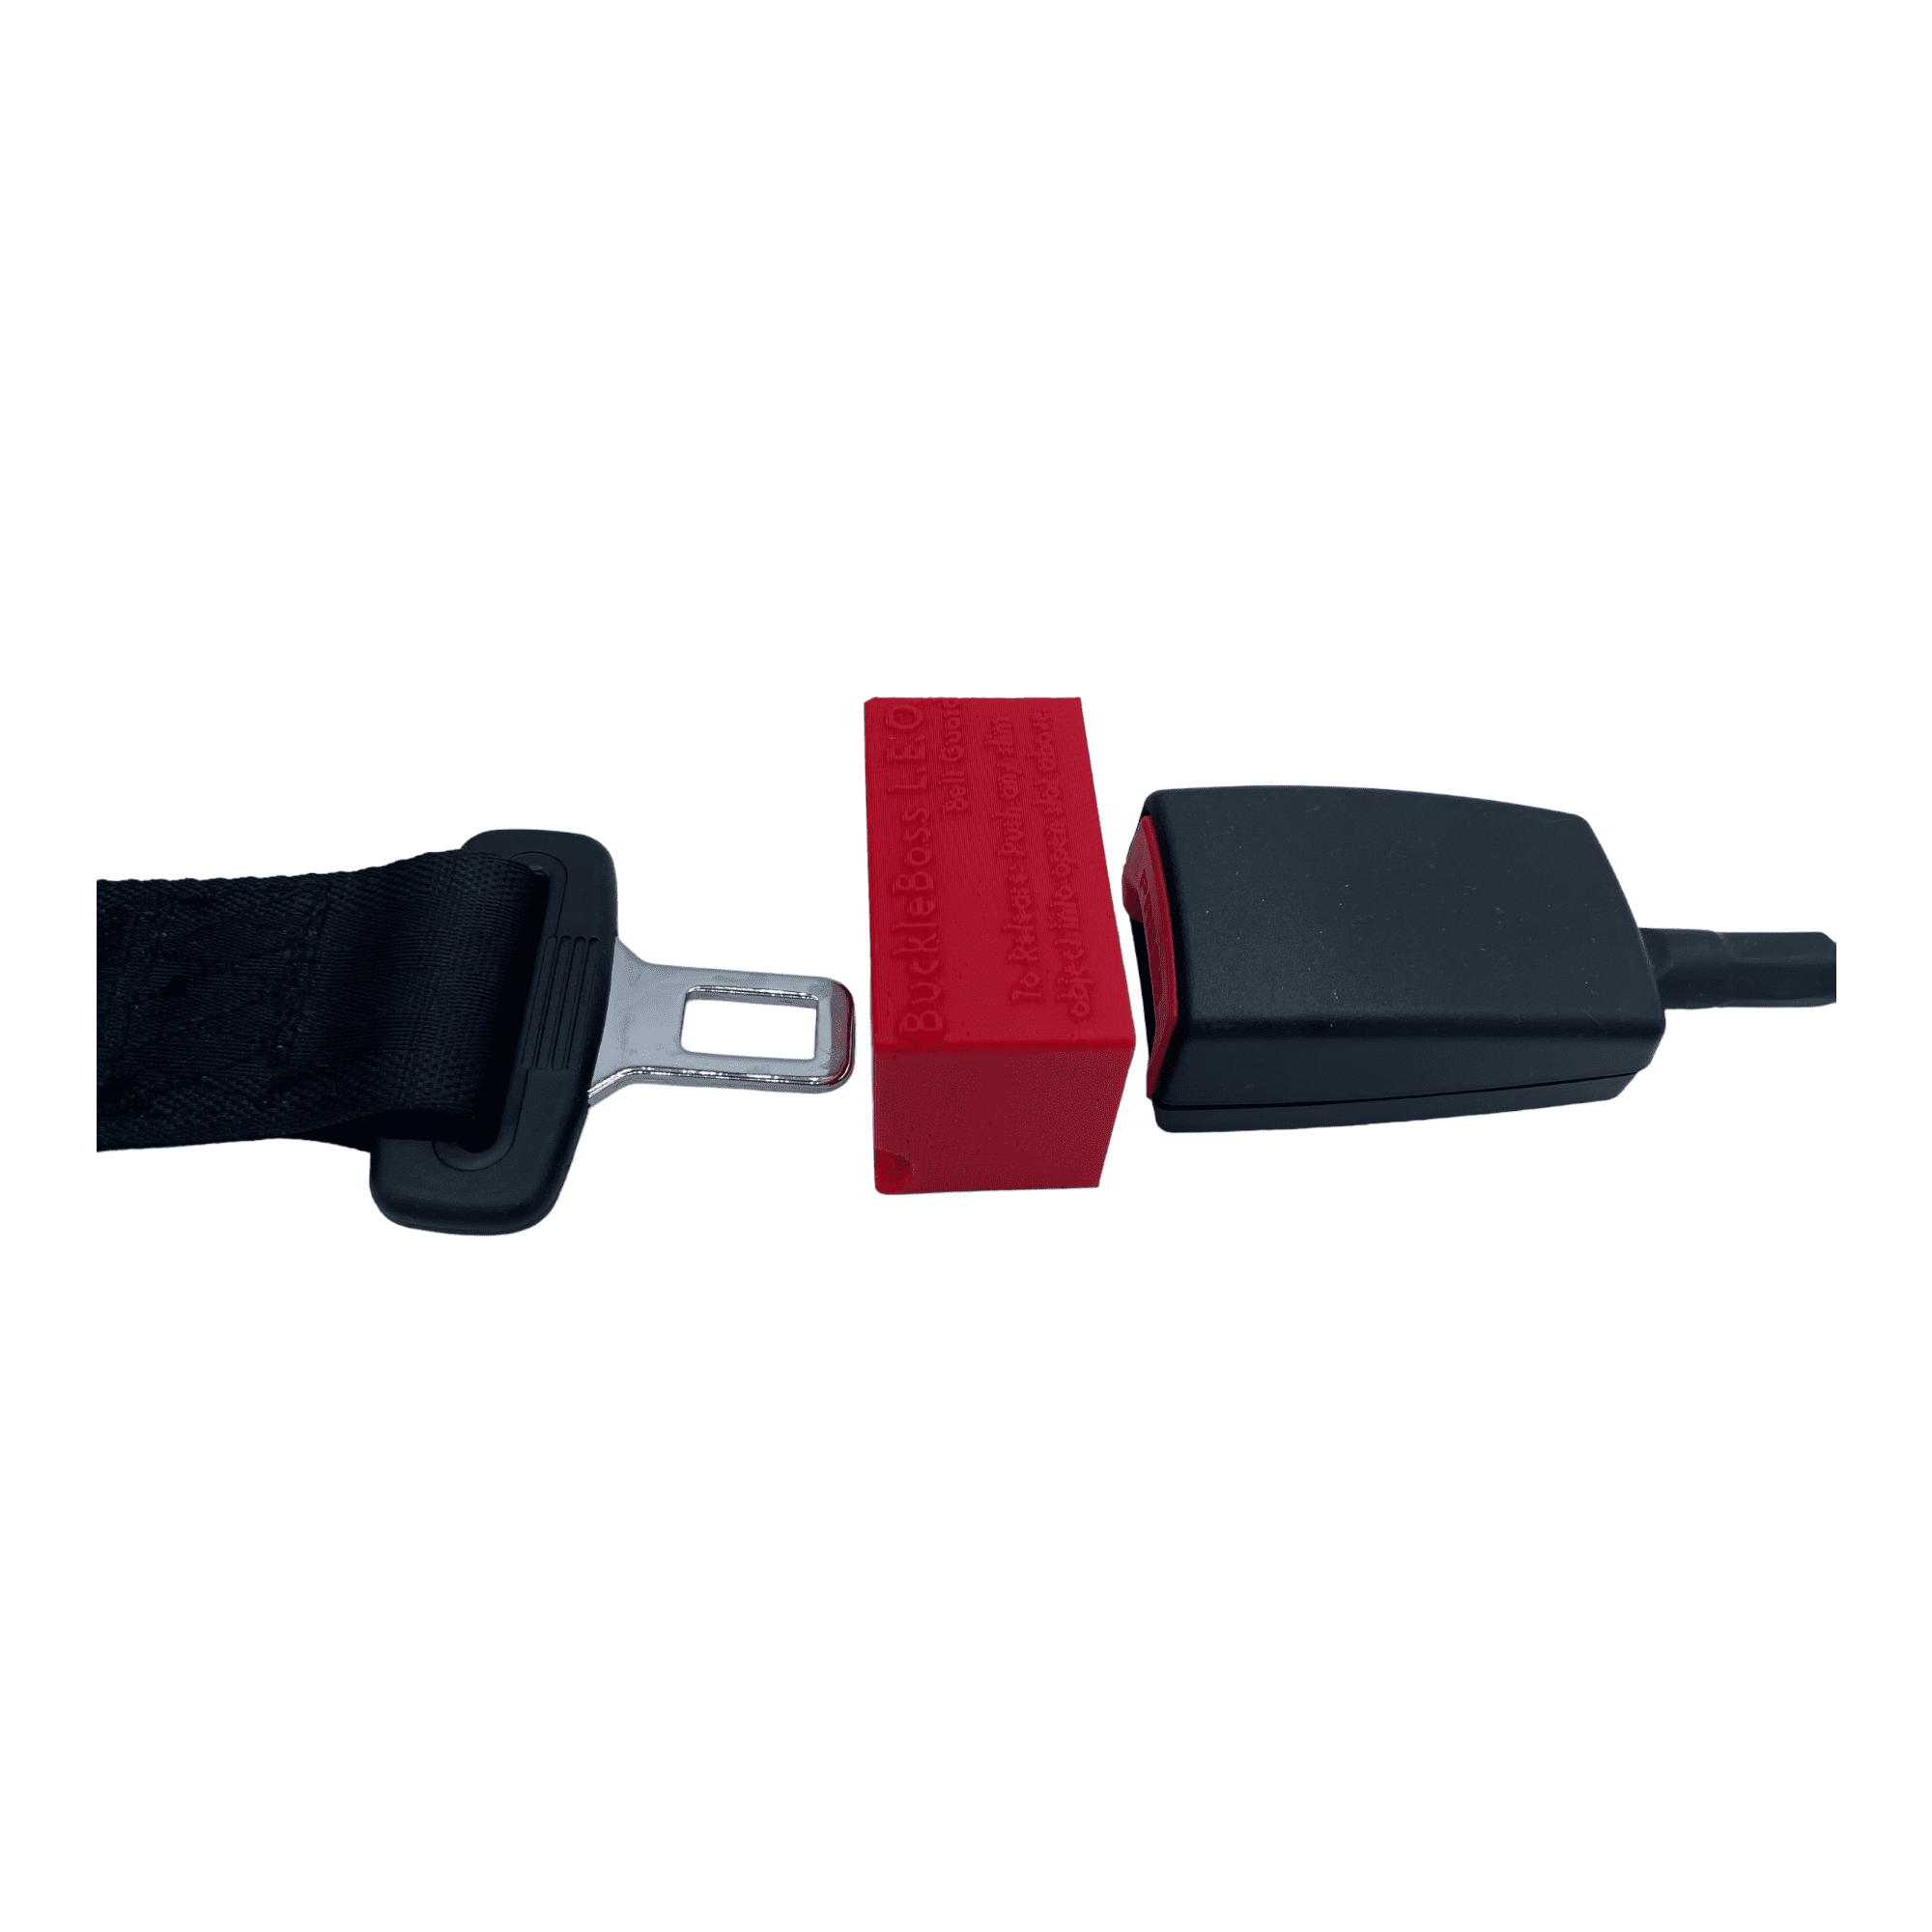 Buckle Boss Seat Belt Guard Cars 2016 & Newer